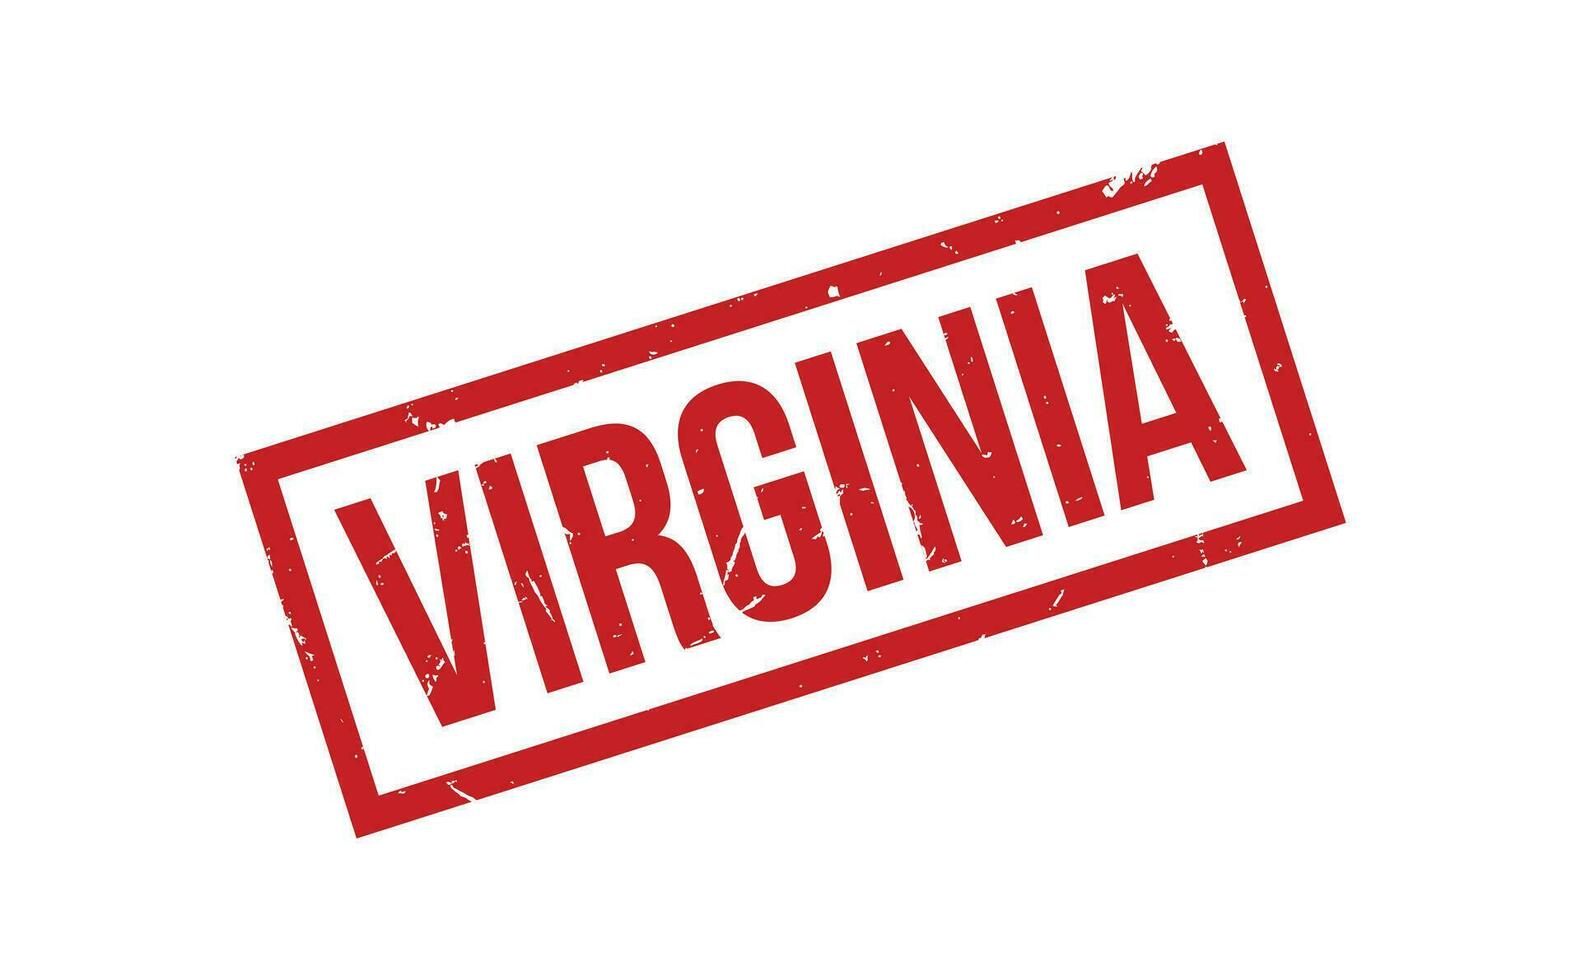 Virginia caucho sello sello vector